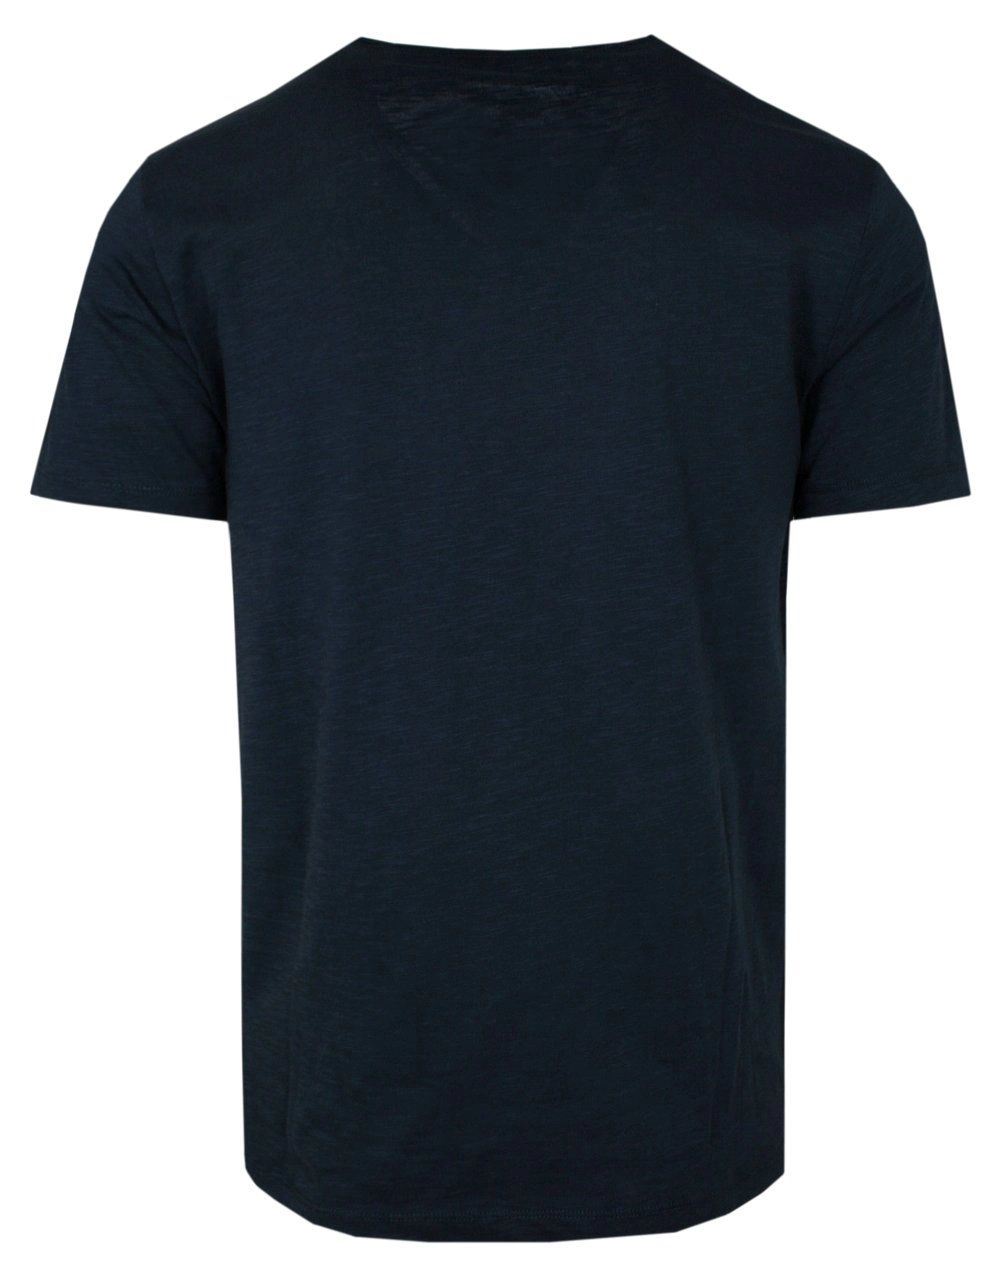 T-Shirt Granatowo-Chabrowy w Pasy, z Kieszonką, Męski, Koszulka, Krótki Rękaw, U-neck